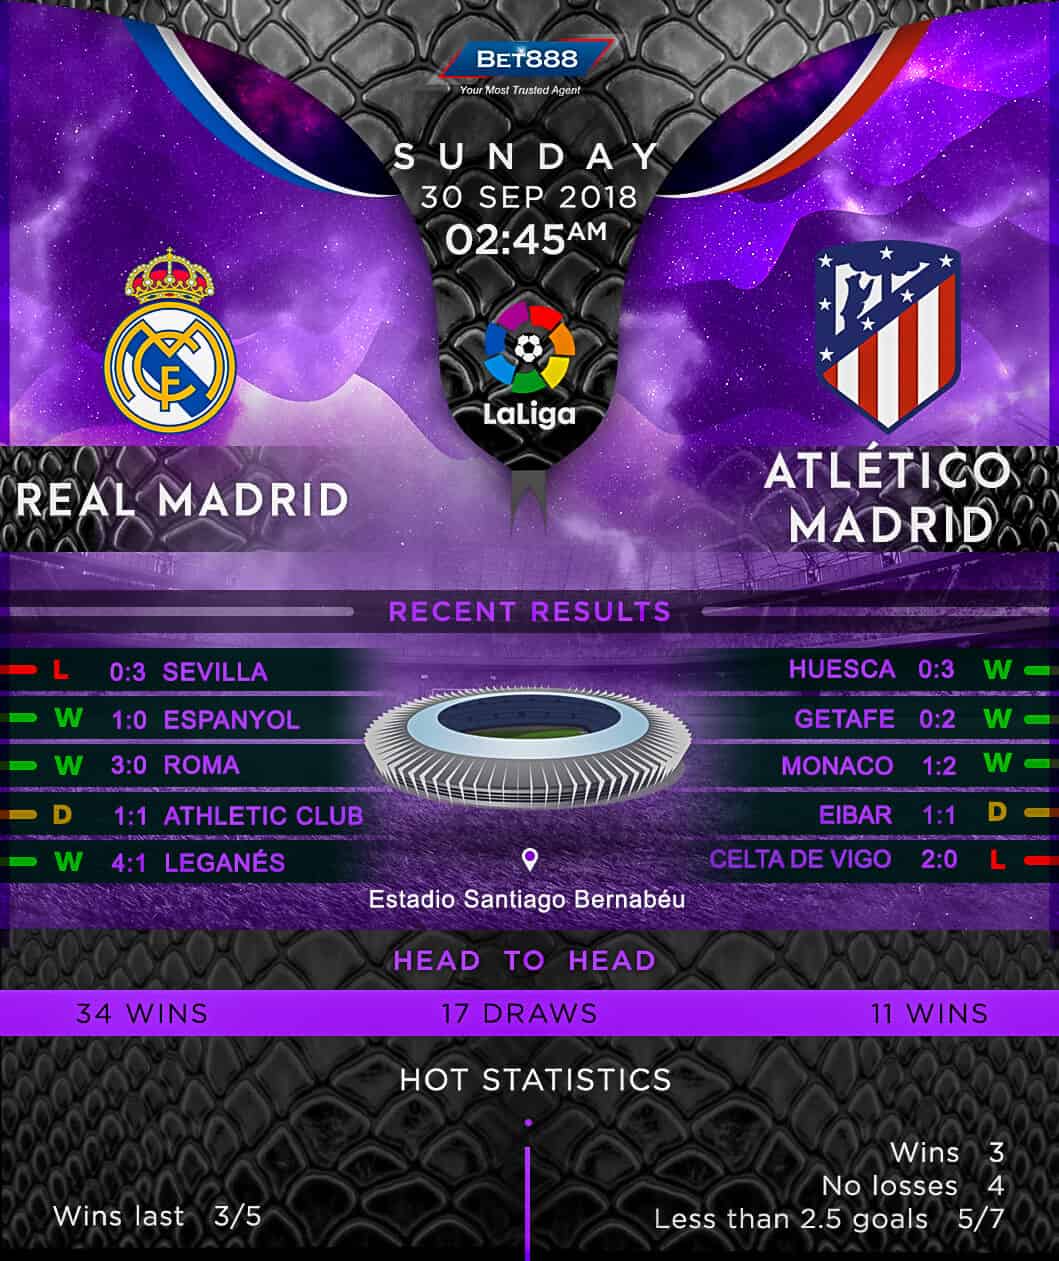 Real Madrid vs Atletico Madrid 30/09/18